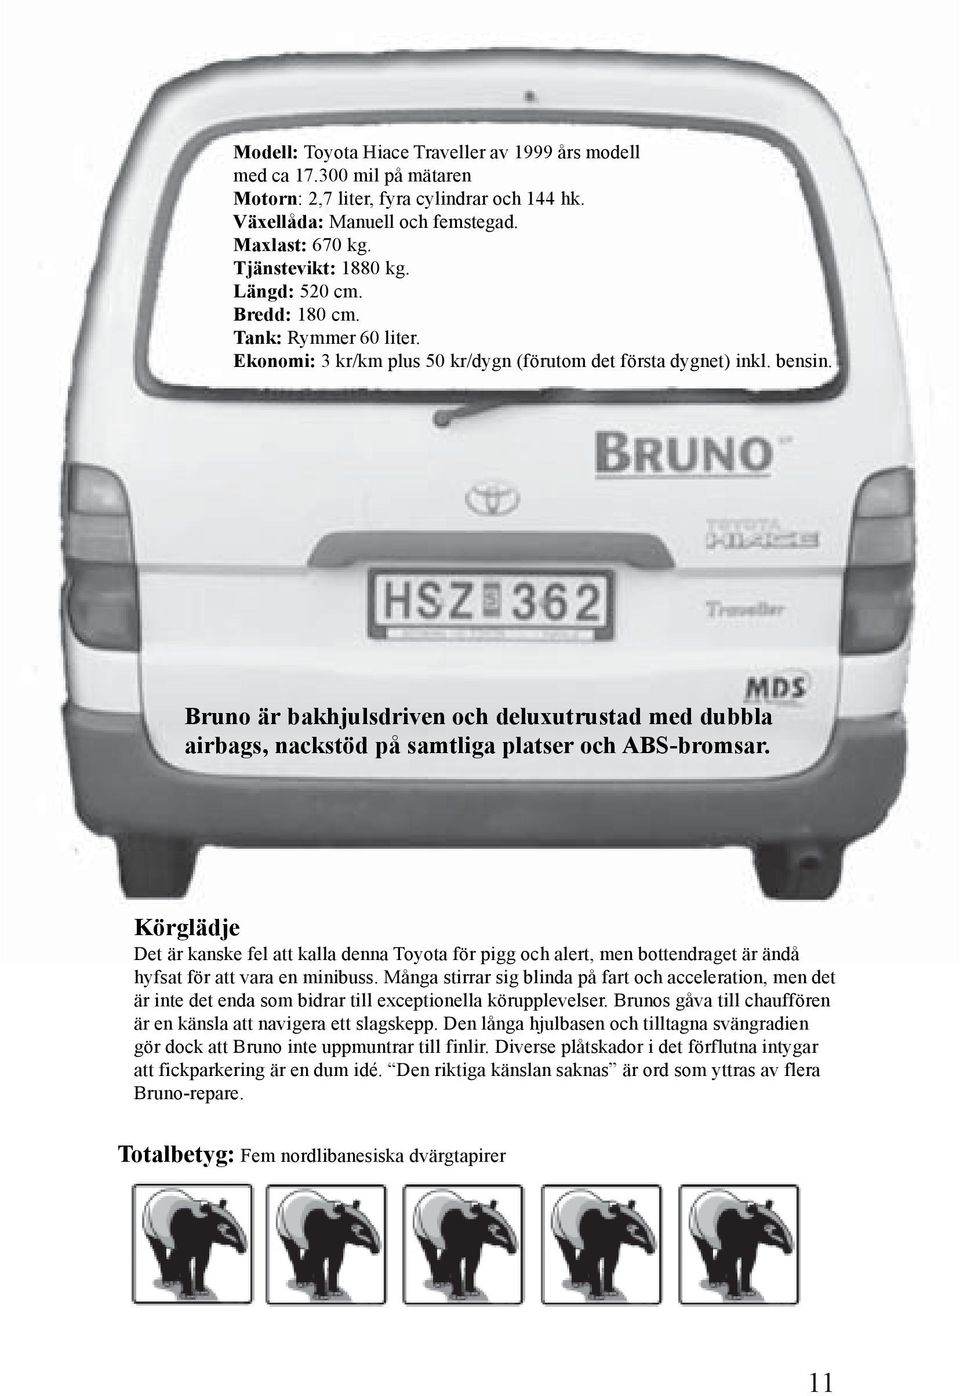 Bruno är bakhjulsdriven och deluxutrustad med dubbla airbags, nackstöd på samtliga platser och ABS-bromsar.